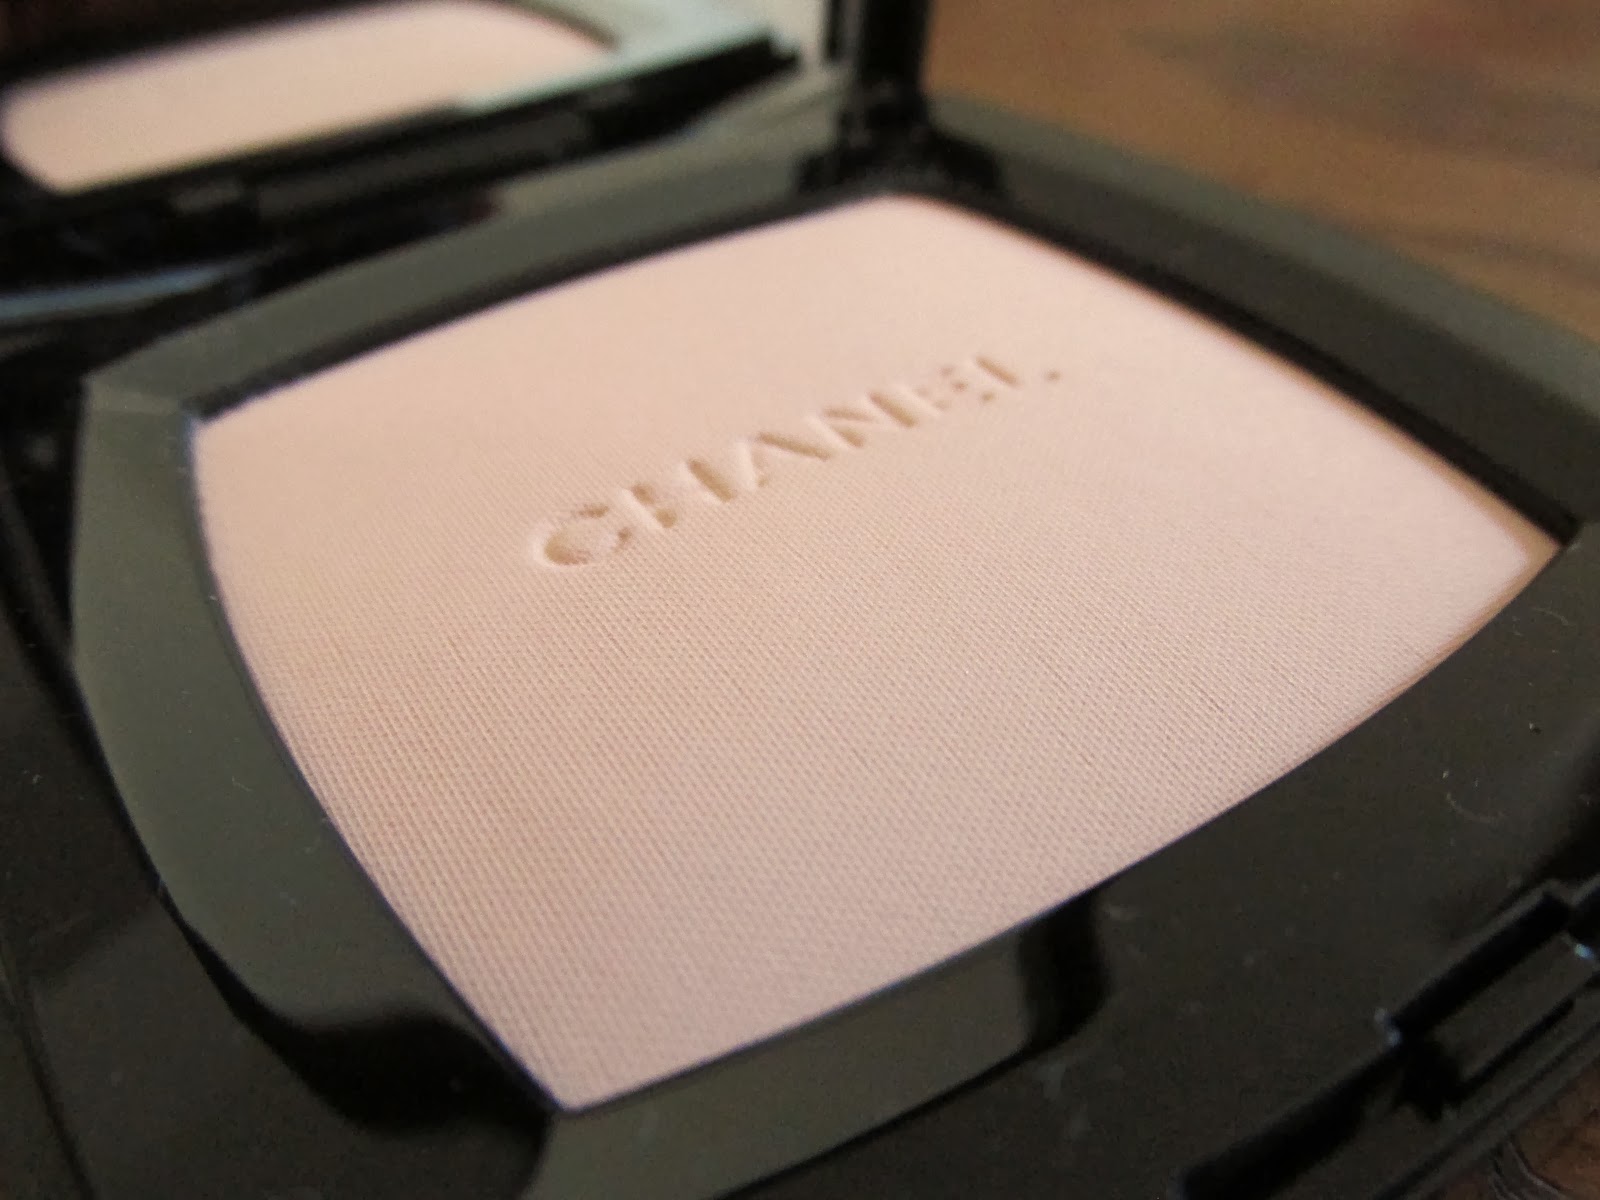 Chanel 160 PREFACE Poudre Universelle Compacte Natural Finish